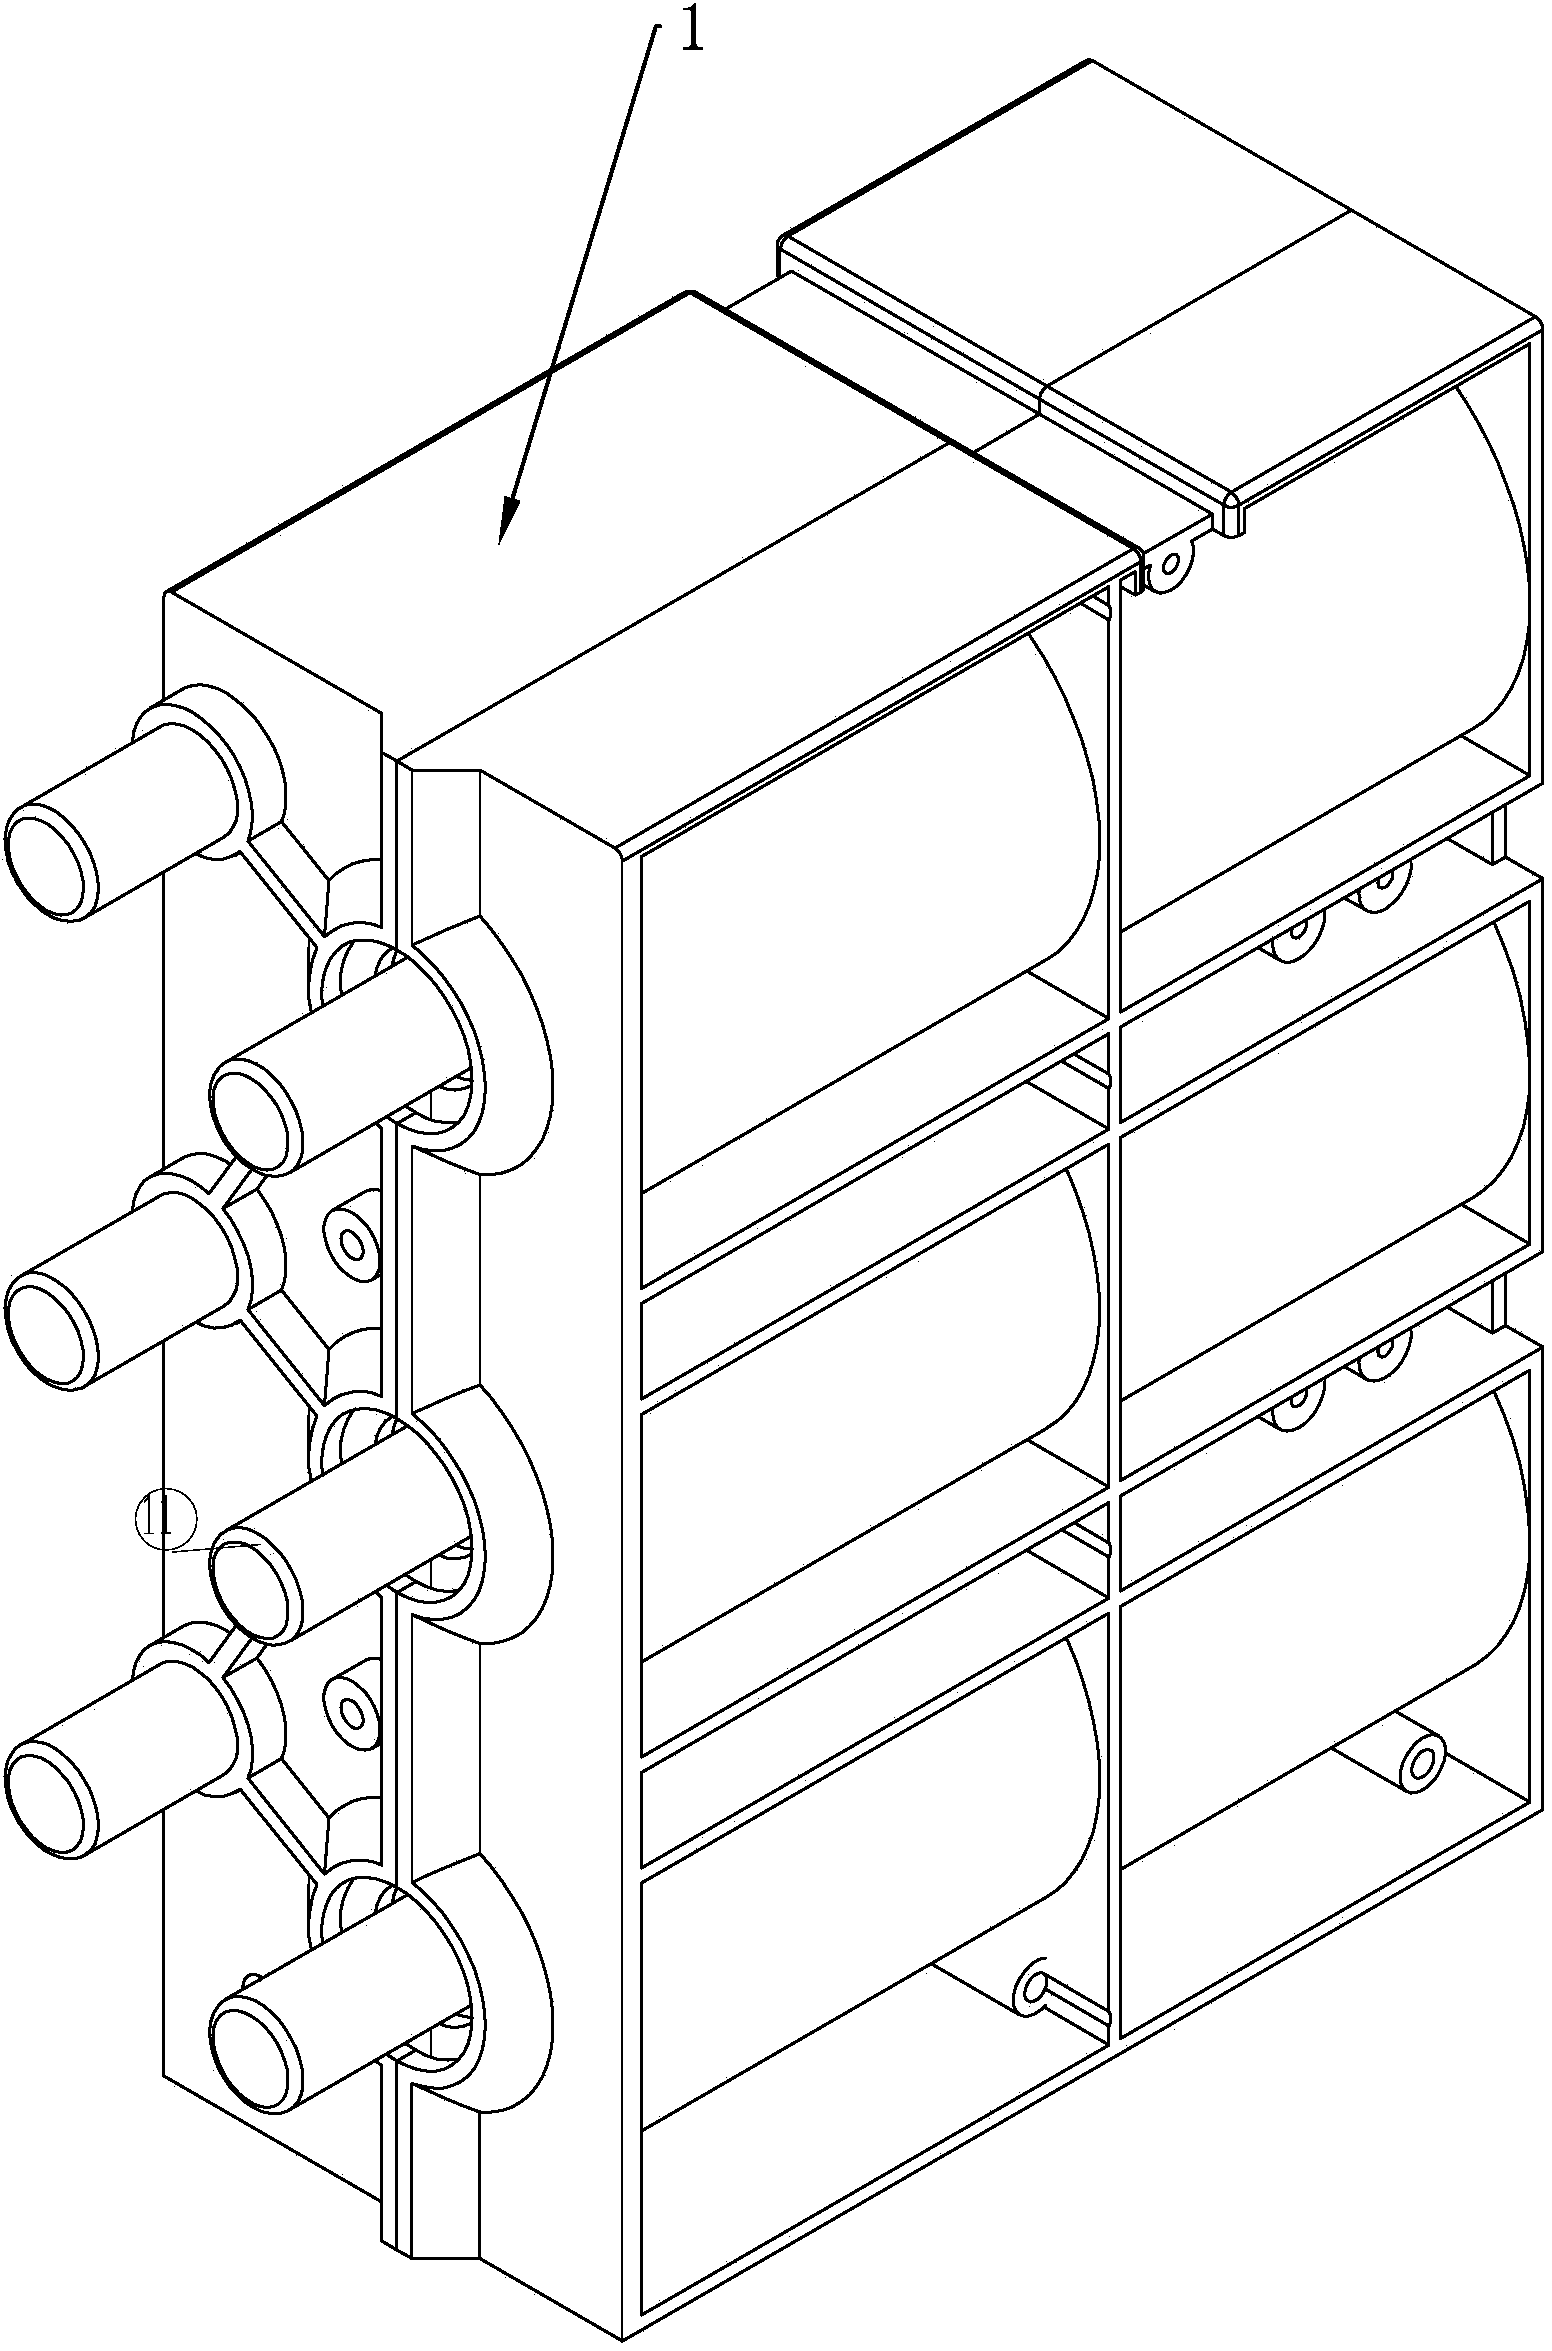 Modular permanent-magnetic circuit breaker